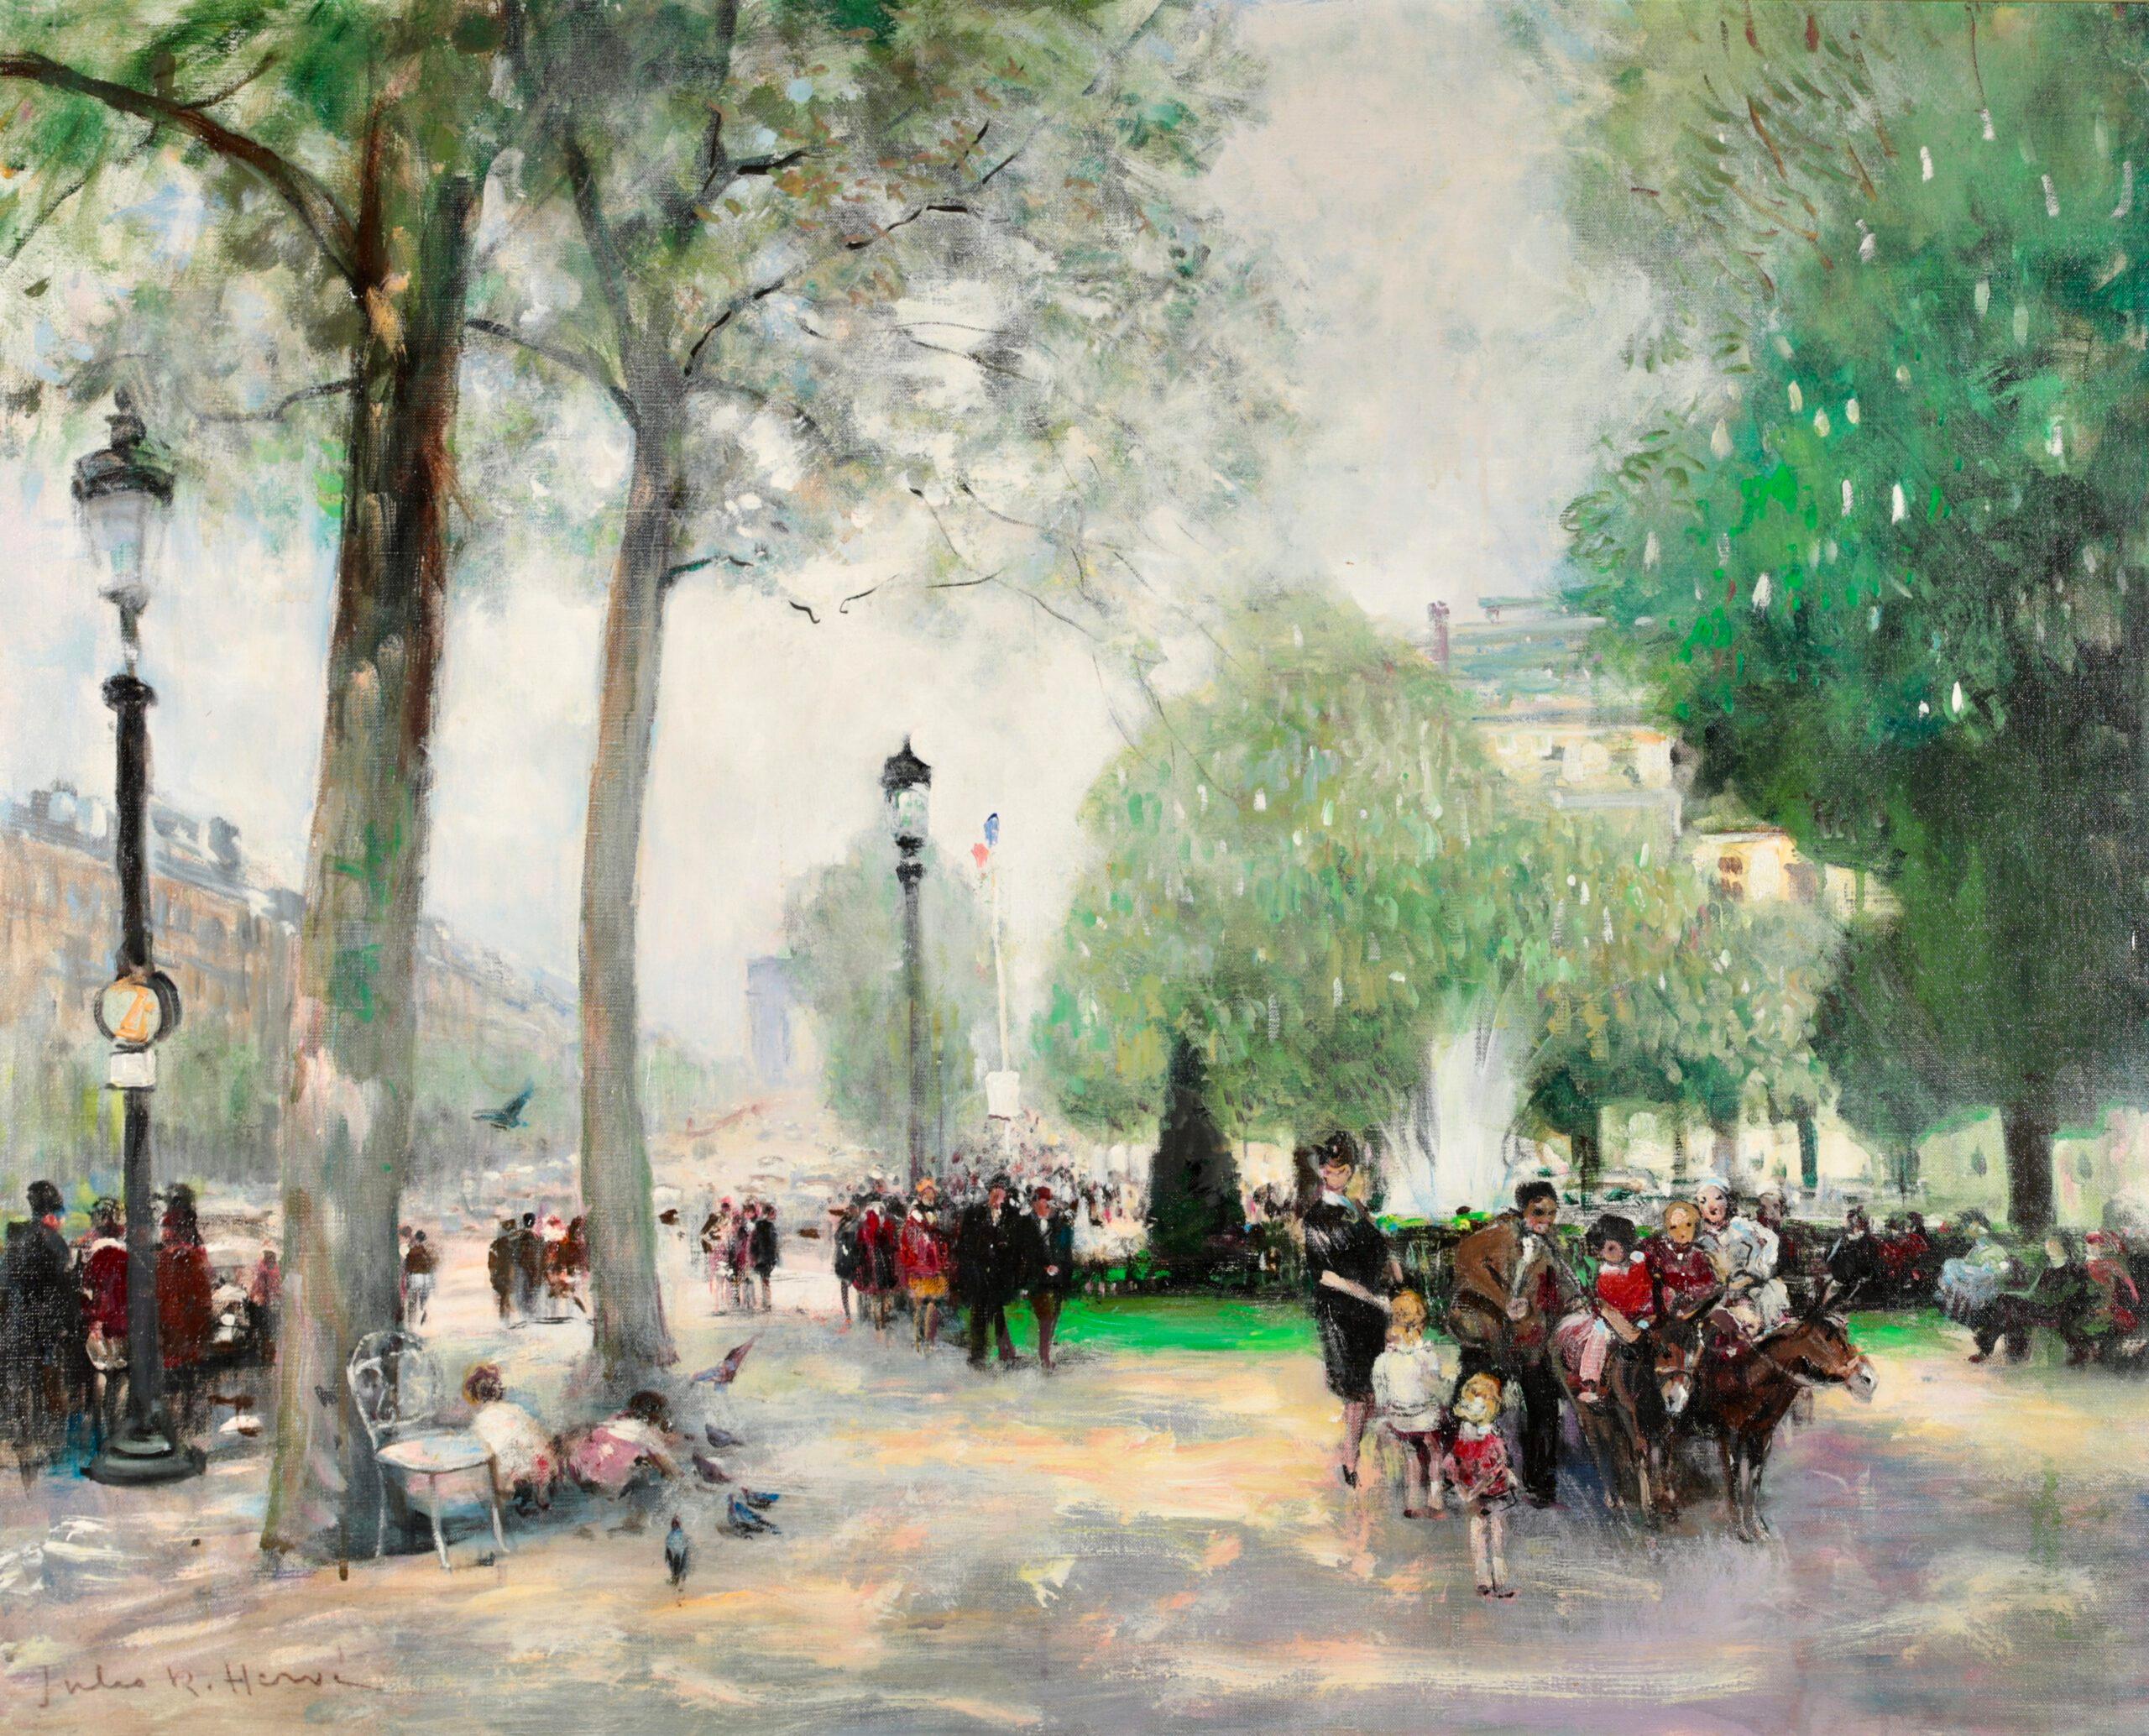 Les marches d'ânes impressionnistes dans un paysage, huile de Jules Rene Herve - Impressionnisme Painting par Jules René Hervé